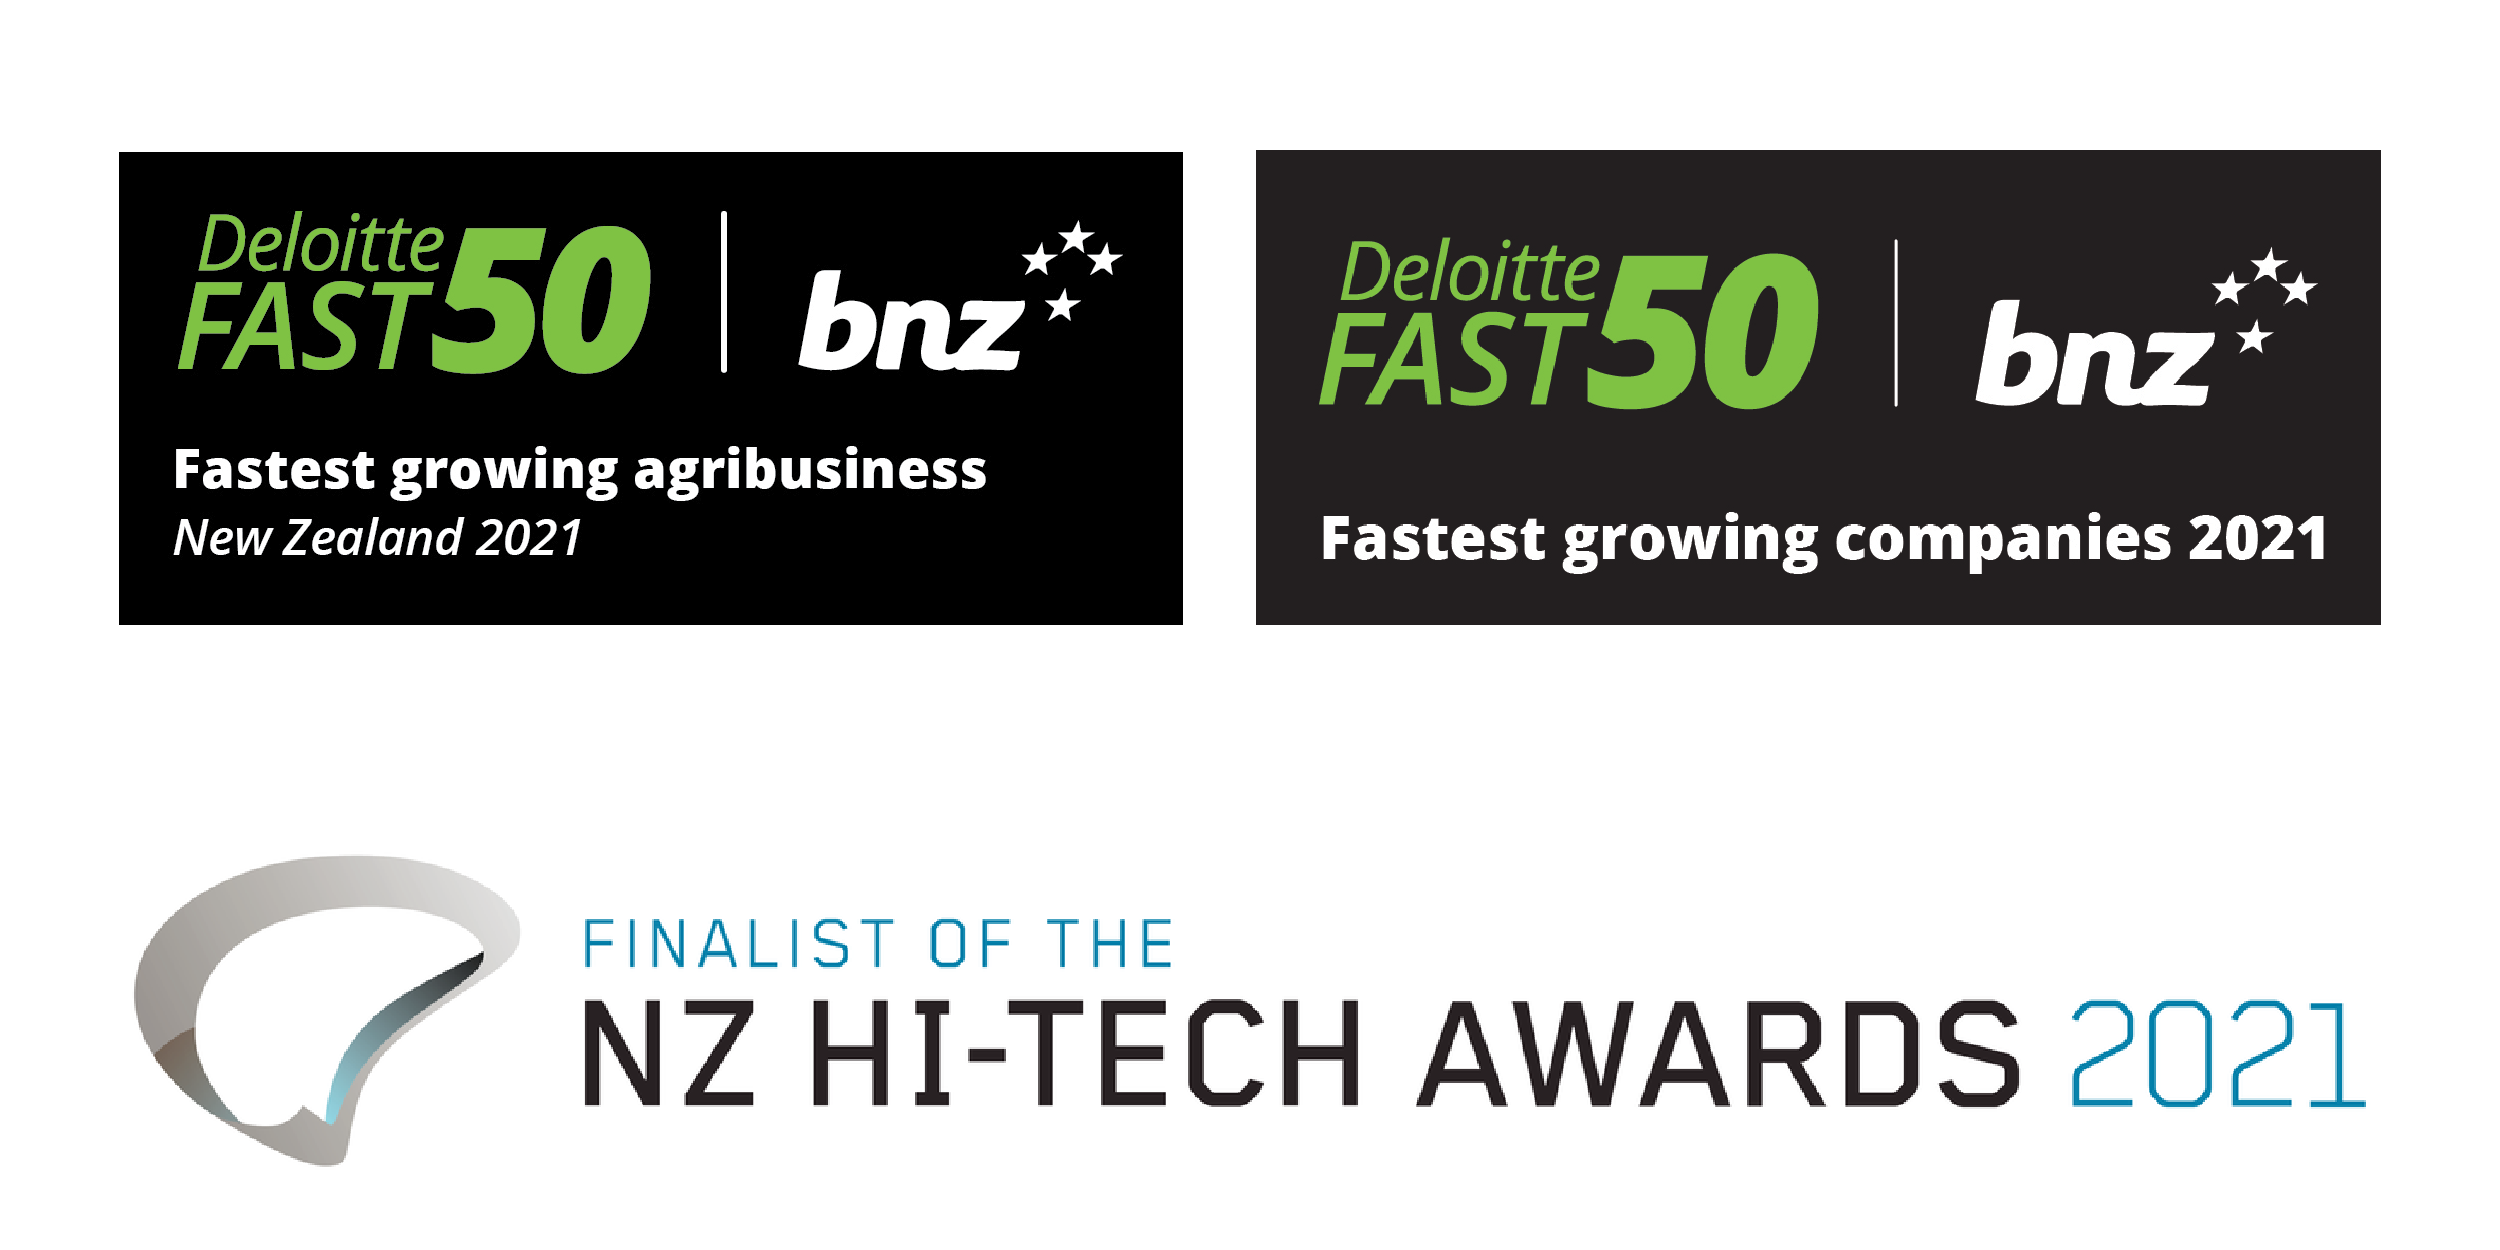 Awards - Deloitte and hi-tech